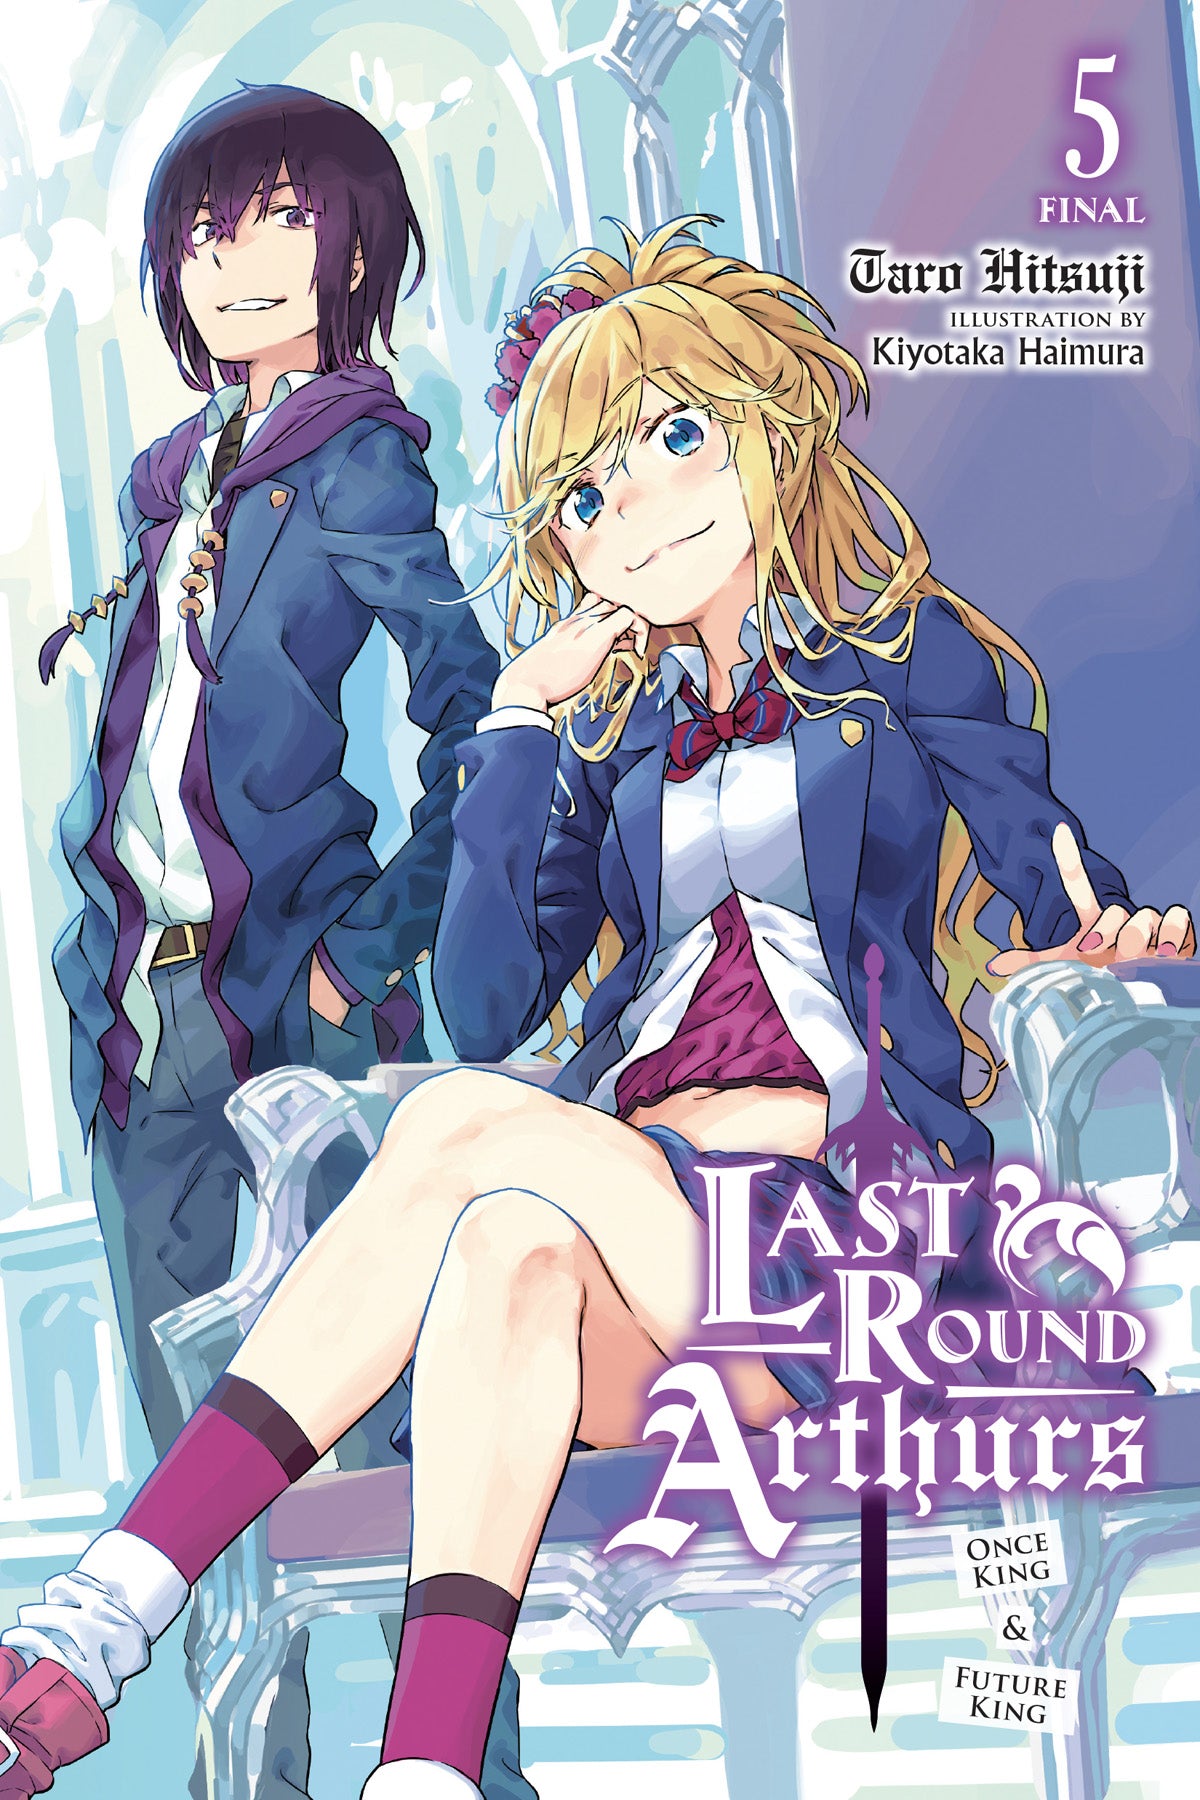 Last Round Arthurs Vol. 05 (Light Novel): Once King & Future King